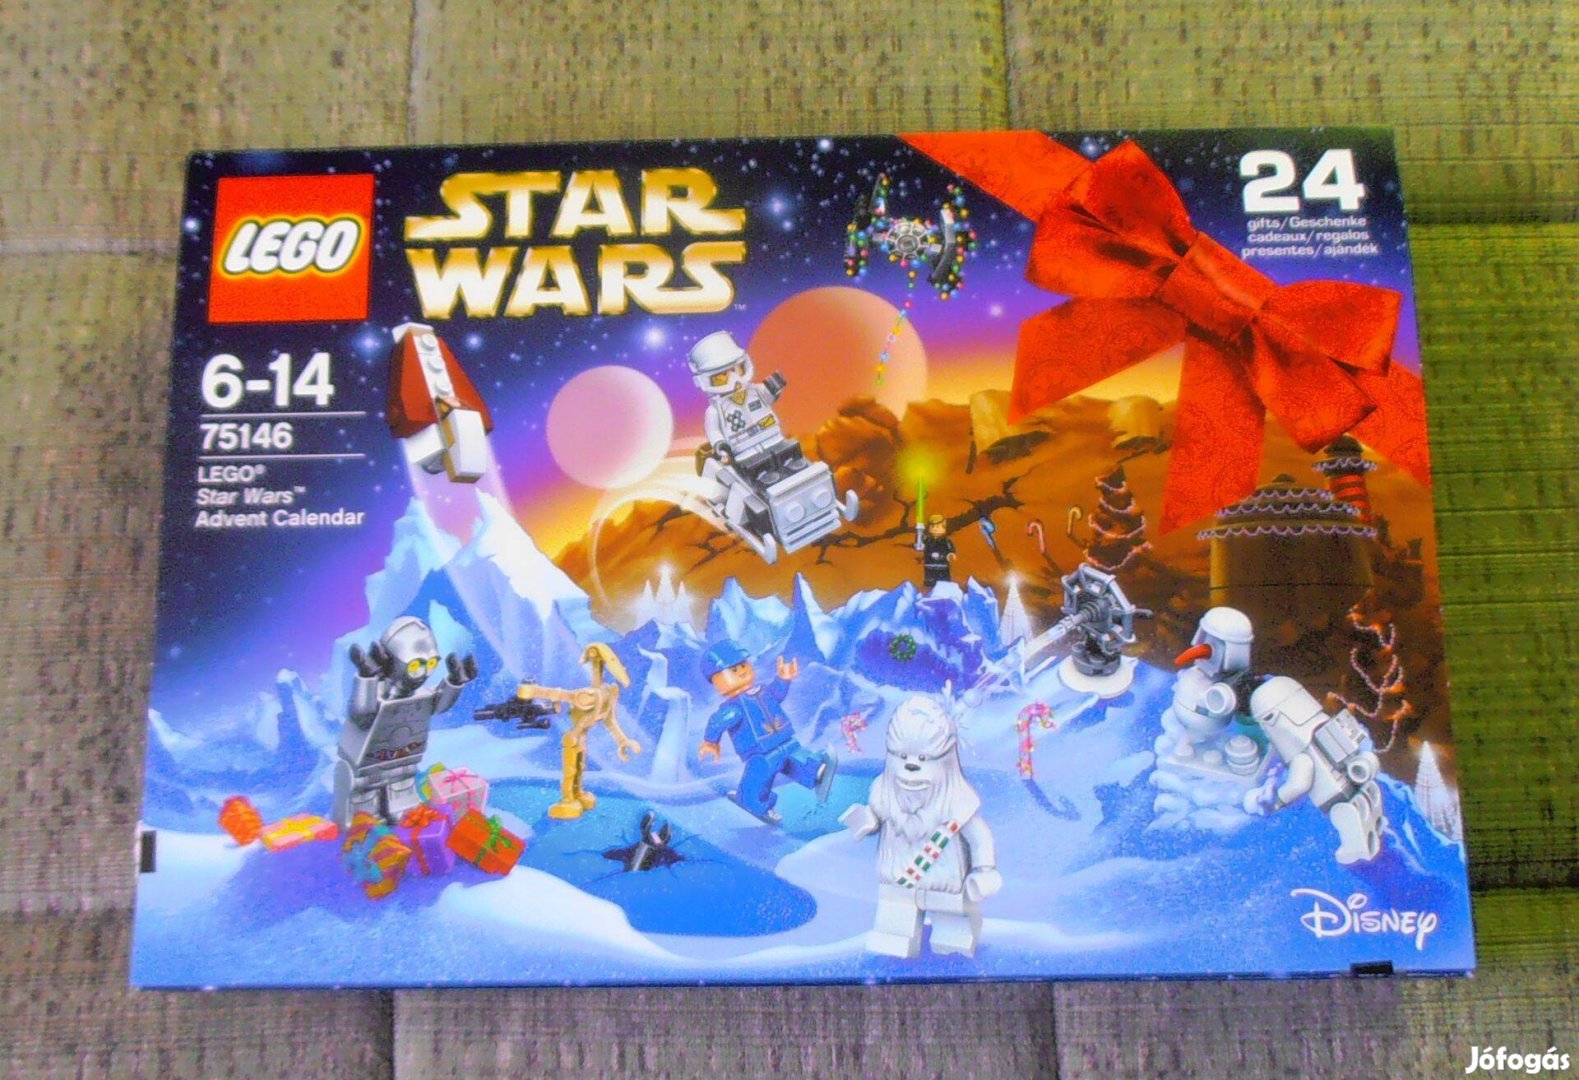 LEGO Star Wars Adventi naptár 2016 75146